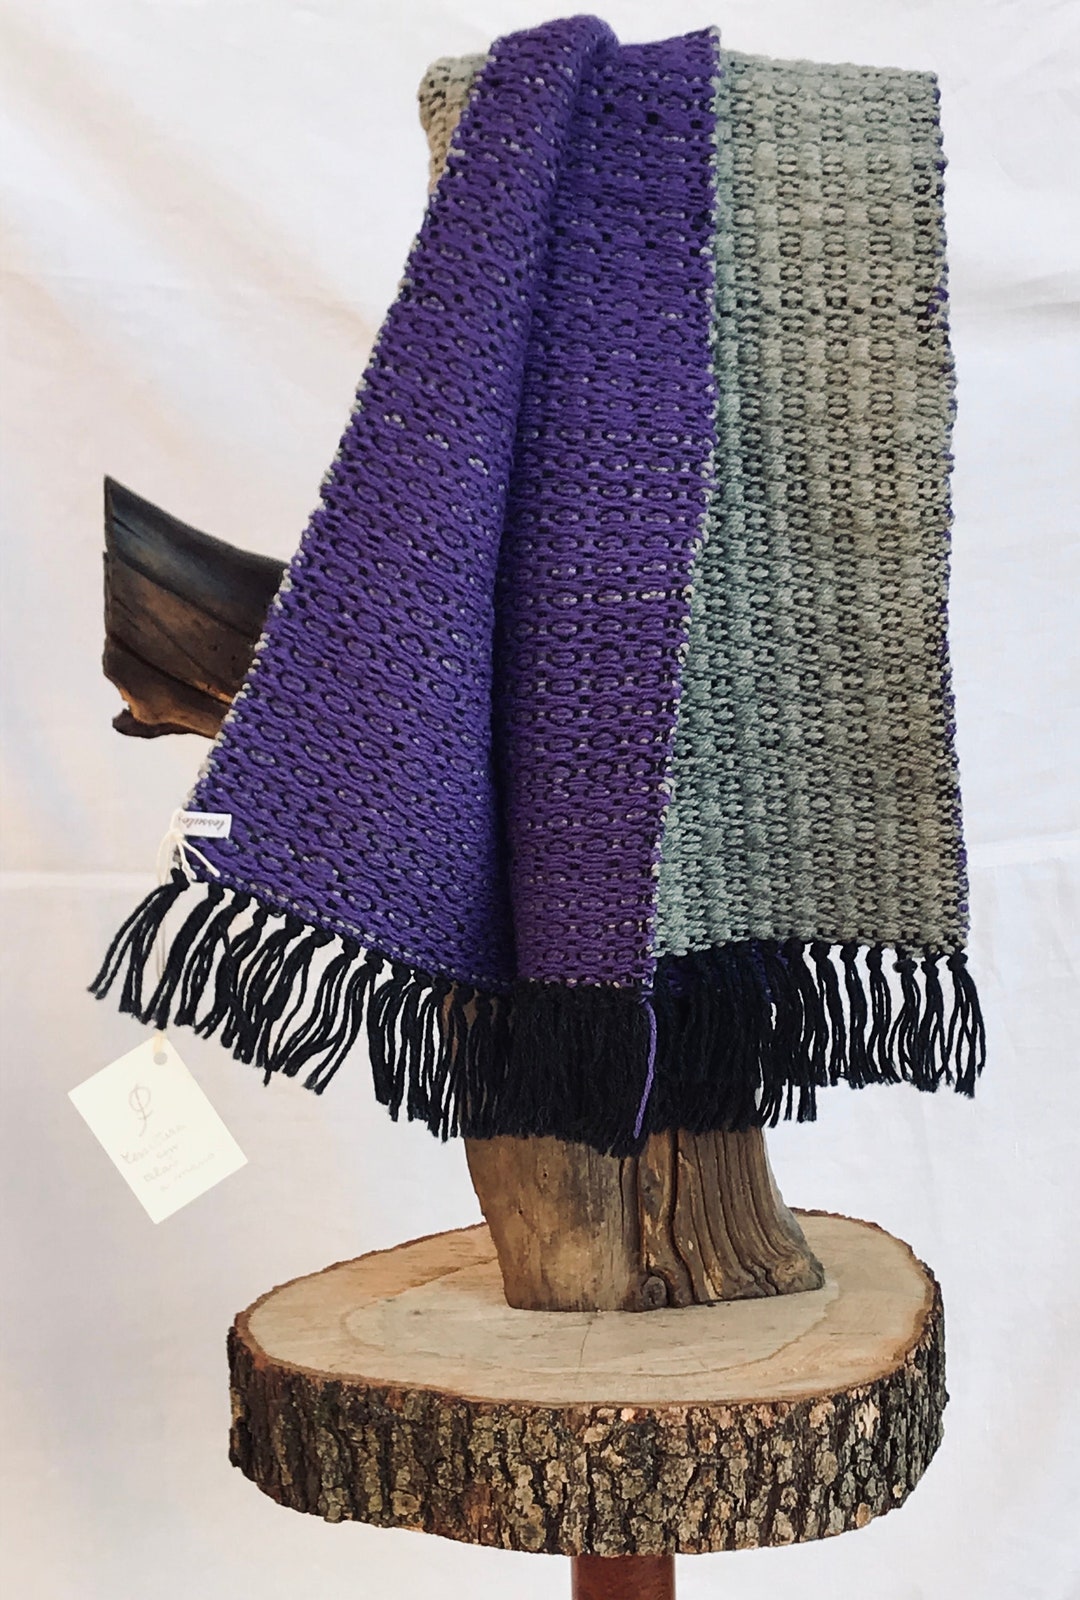 Sciarpa in lana fatta al telaio a mano - Reborn in Italy